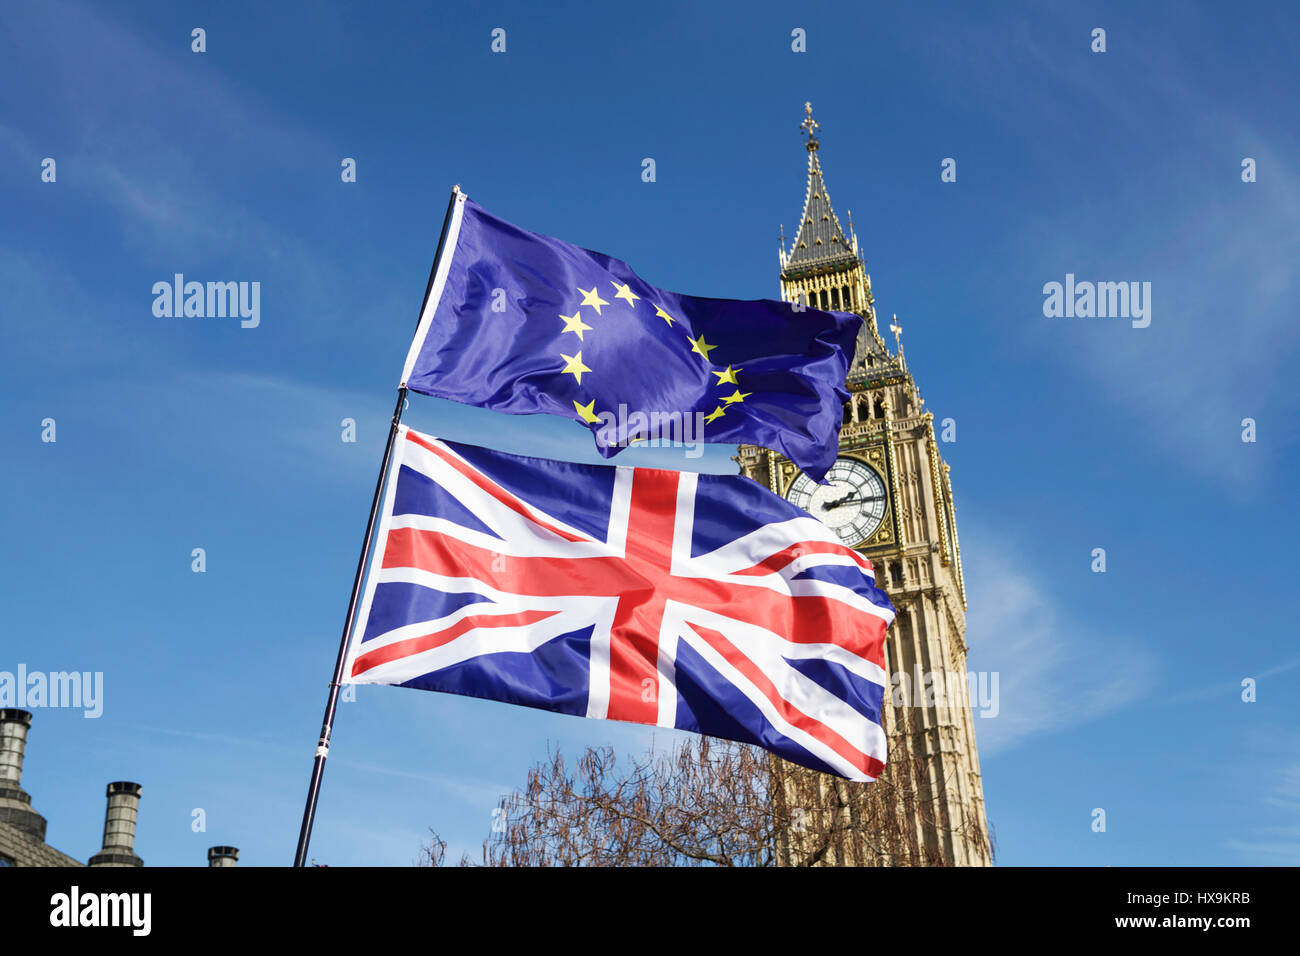 London, Großbritannien. März 2017. Unite for Europe veranstaltete einen Pro-EU-marsch in London. Anti-BREXIT-Demonstranten marschieren von der Park Lane zum Parliament Square. BREXIT-Flagge, Flaggen, Union Jack-Flagge, EU-Flagge, europäische Flagge, Big Ben. Flaggen des Parlaments. Britische Politik Großbritannien. Brexit-Konzept. Britische Demokratie. Stimmen Sie dem Brexit zu. Brexit-Deal des britischen parlaments. Handelsgespräche. Stockfoto